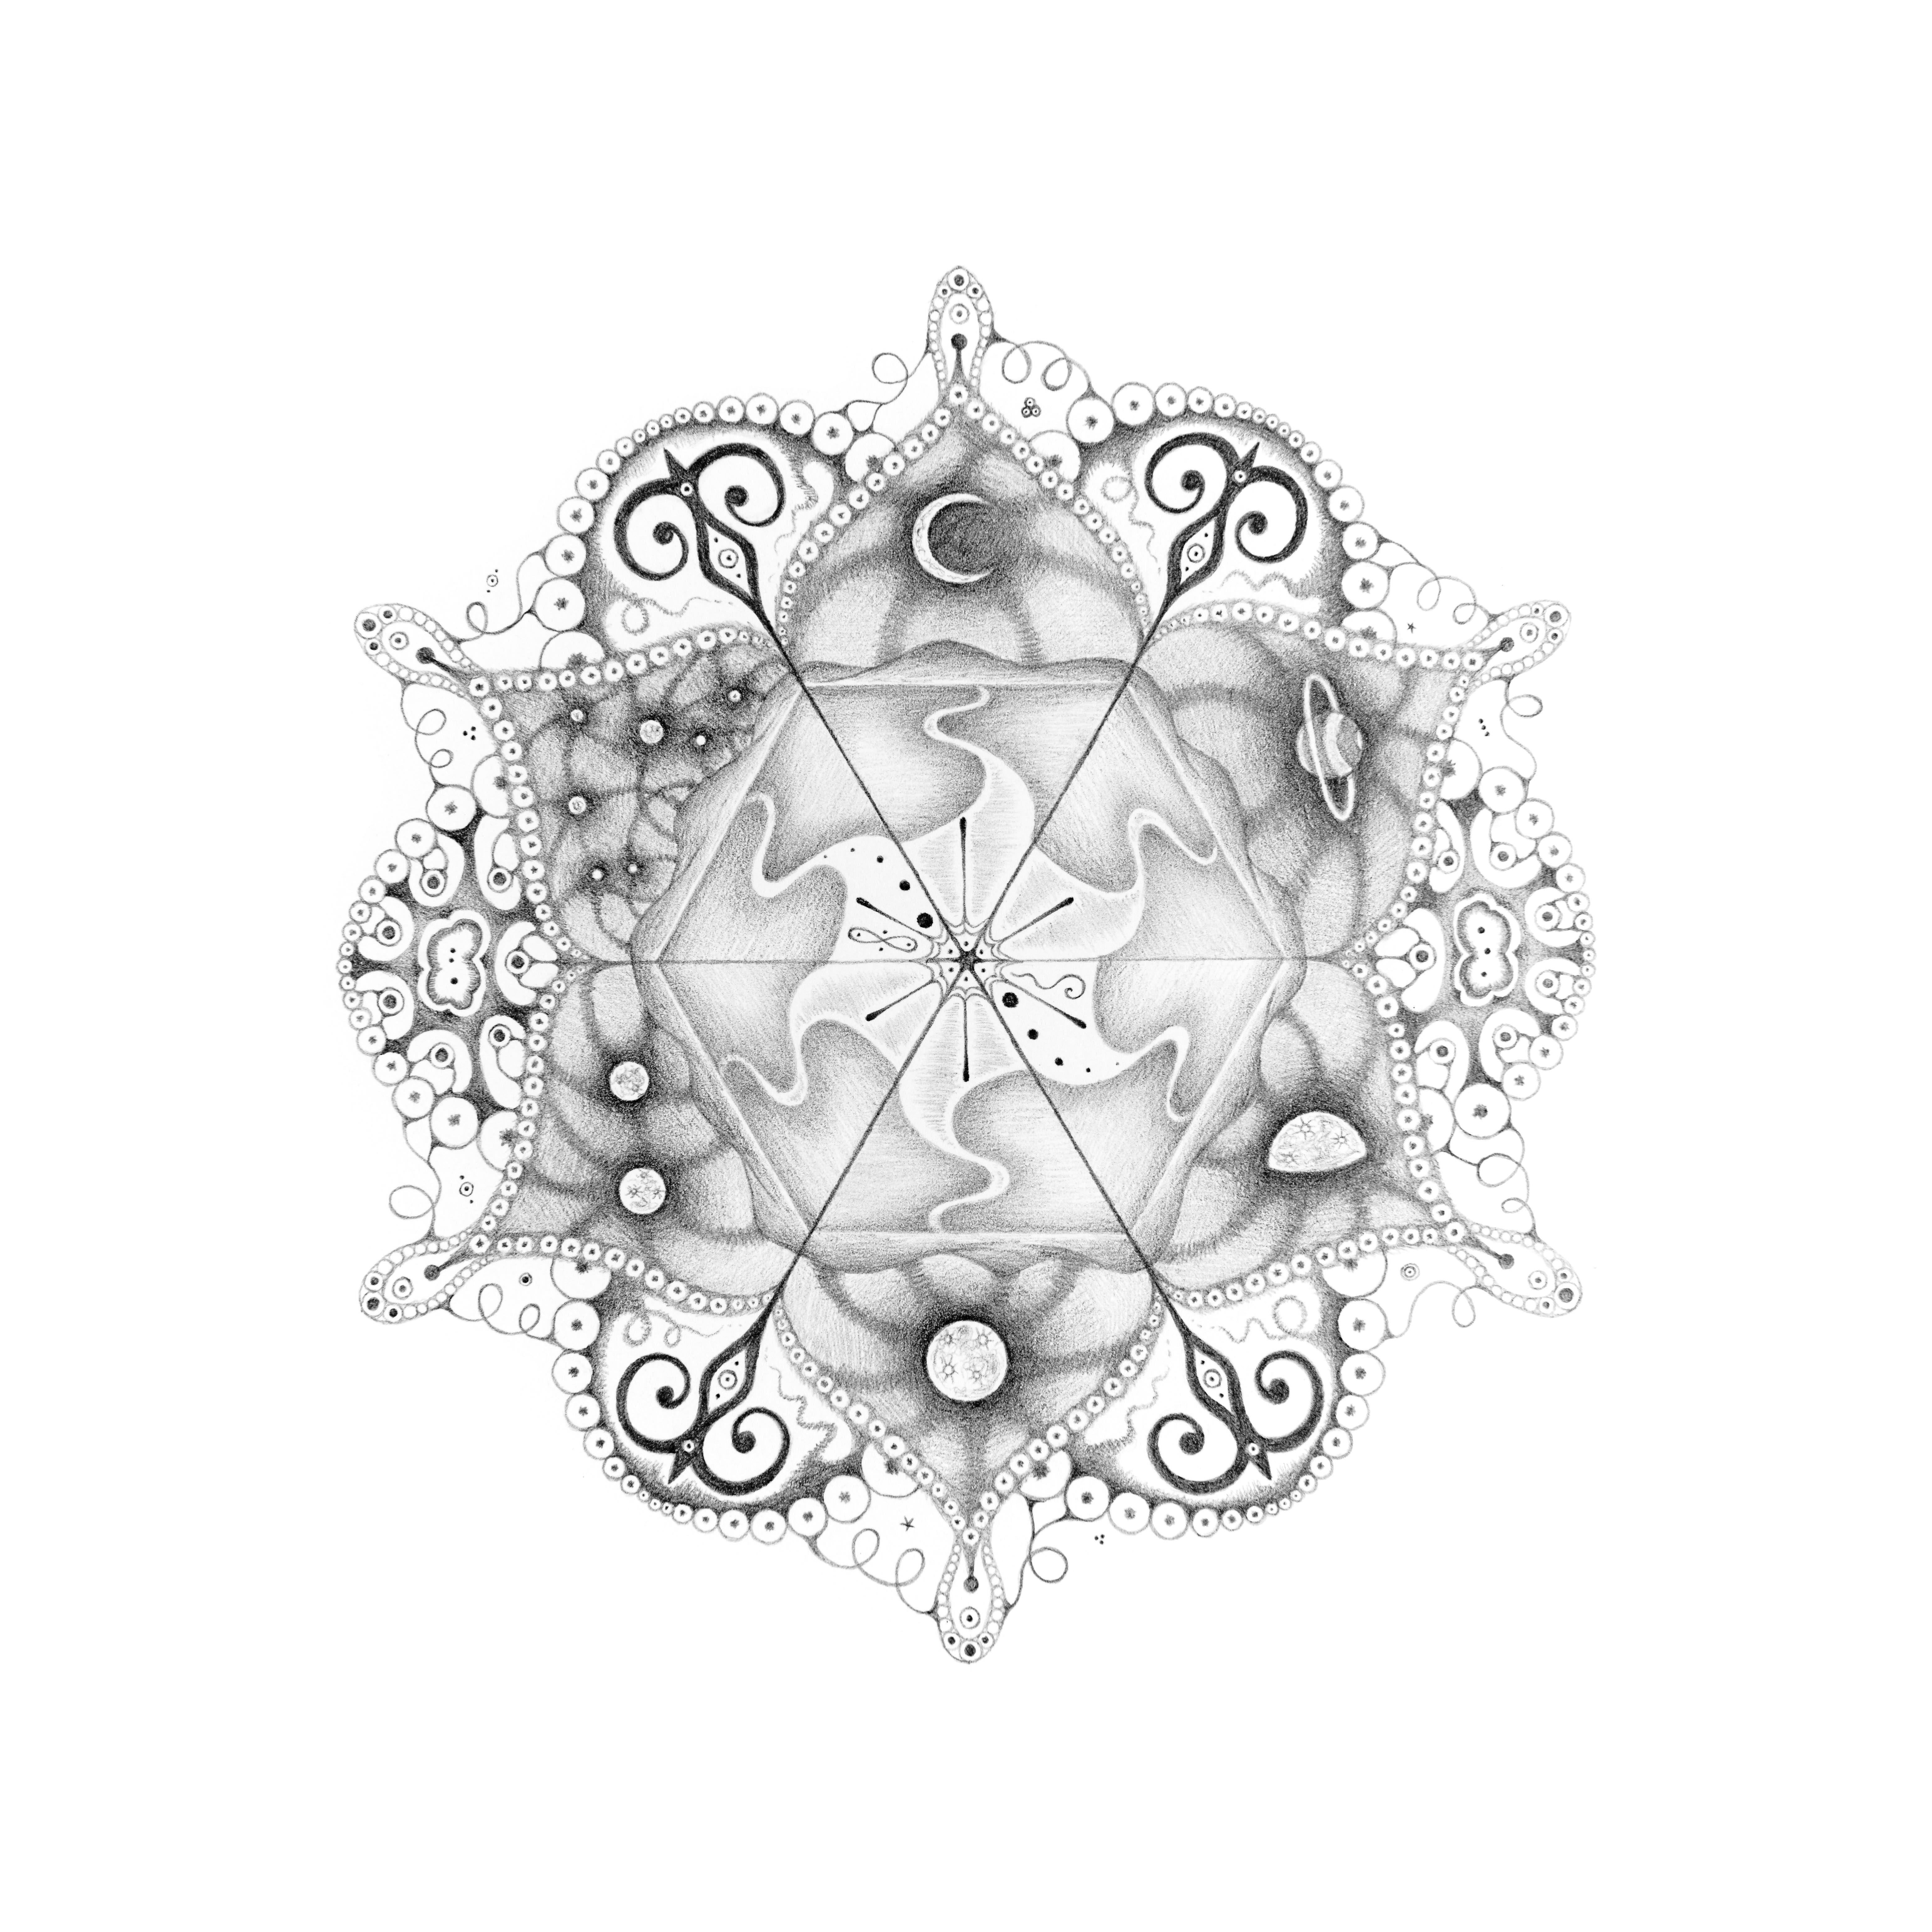 Abstract Drawing Michiyo Ihara - Drawing Mandala 108 Matrix, Planet and Crescent Moon